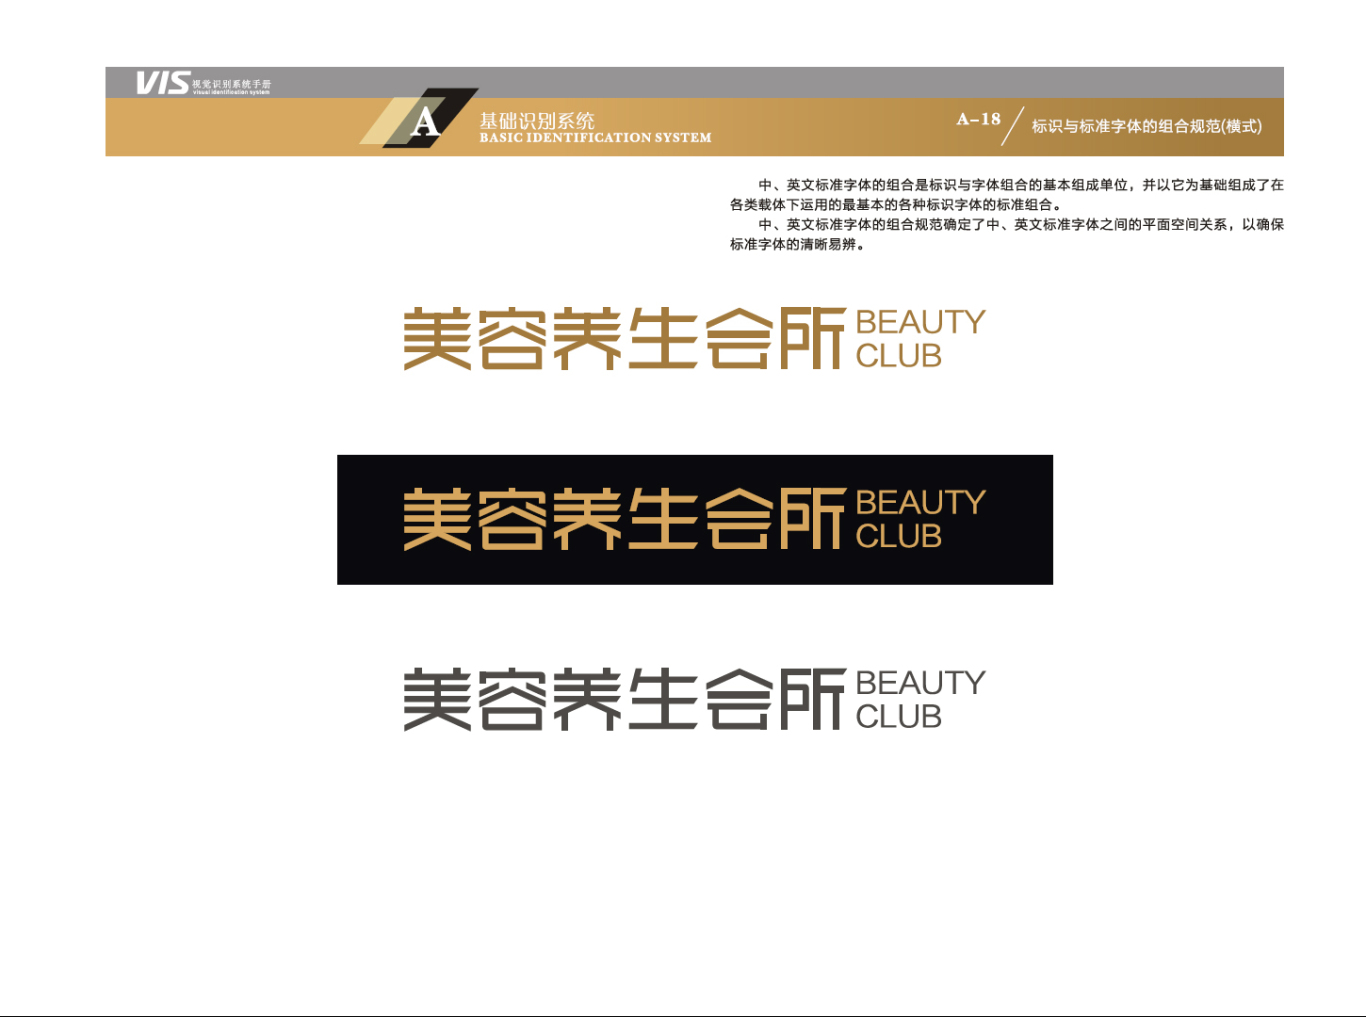 上海丝芭蒂化妆品有限公司-VIS视觉识别系统图10